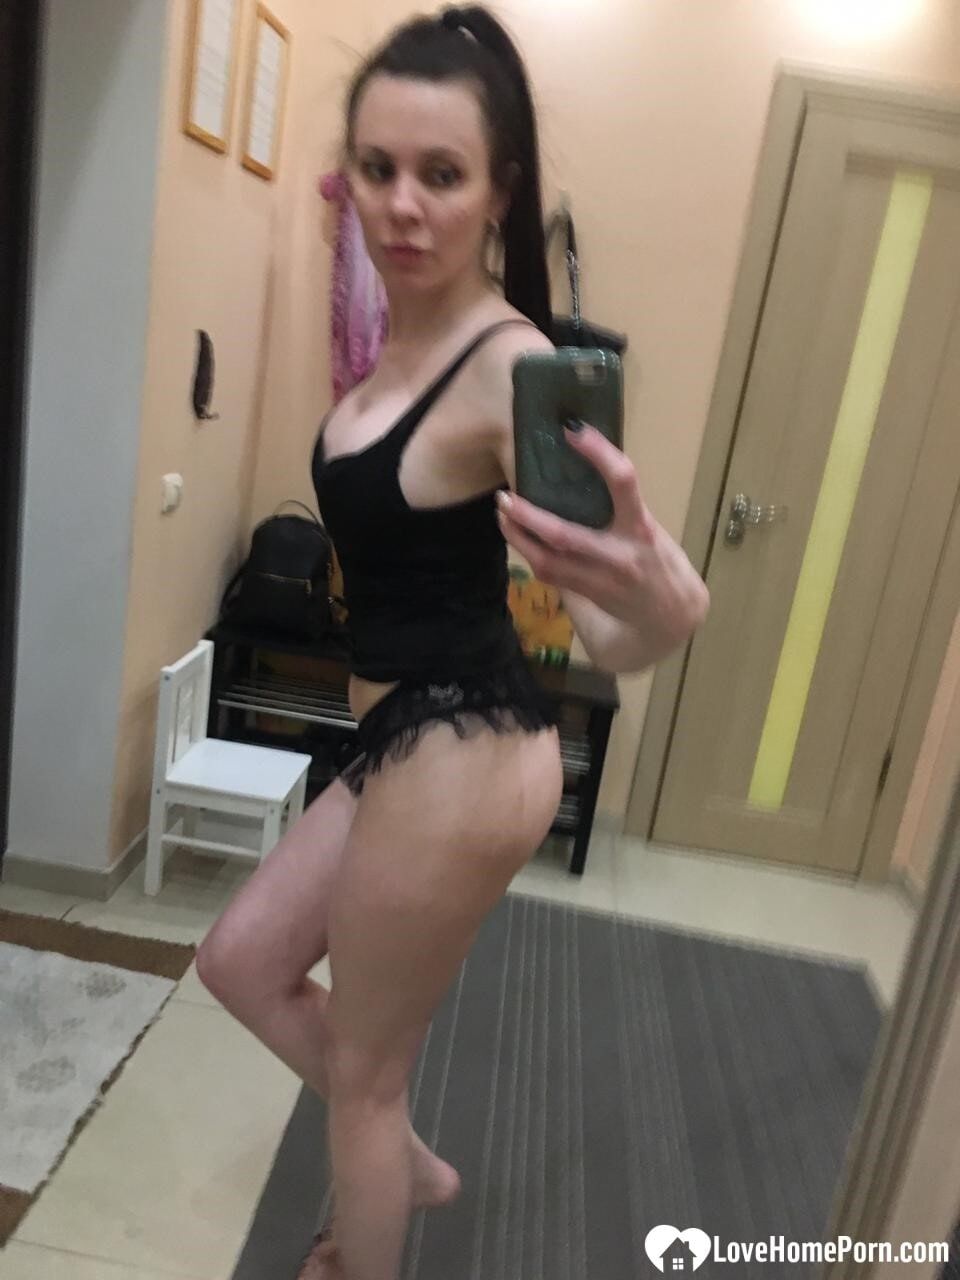 Sexy mirror selfies in my favorite lingerie #5